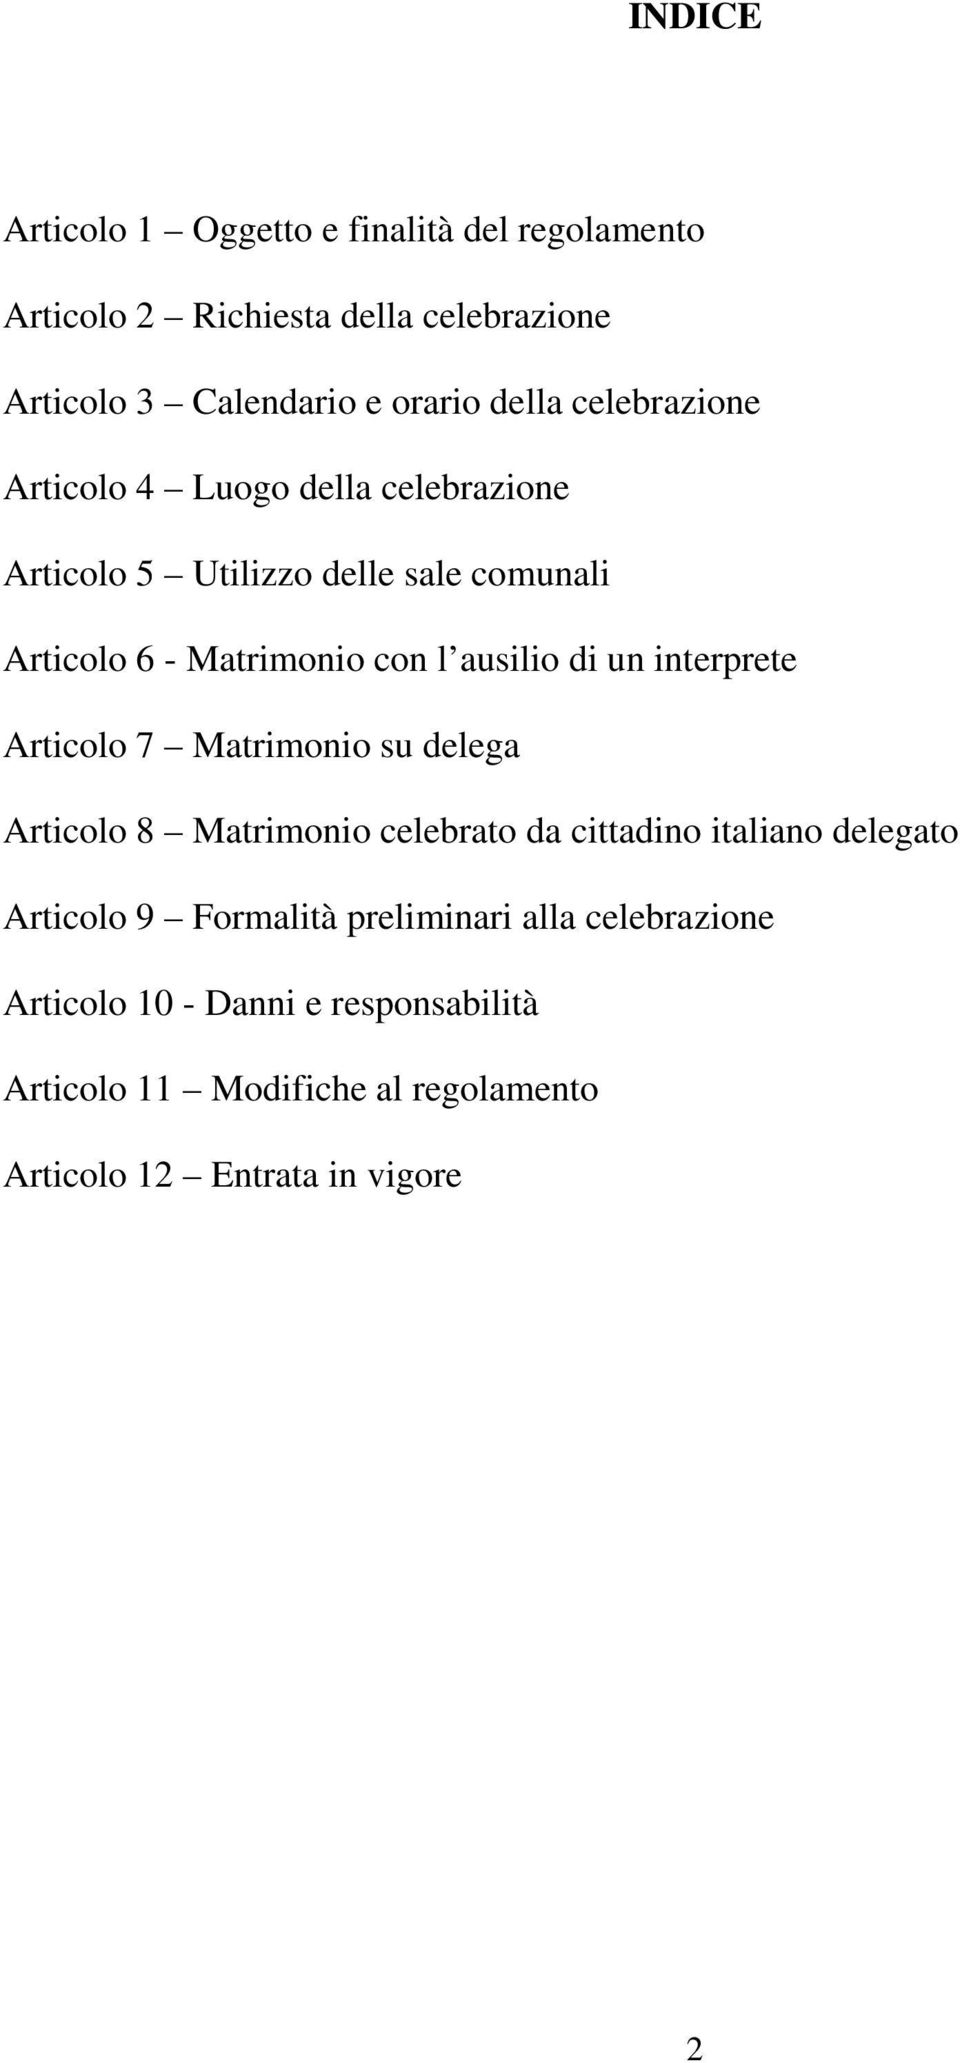 un interprete Articolo 7 Matrimonio su delega Articolo 8 Matrimonio celebrato da cittadino italiano delegato Articolo 9 Formalità